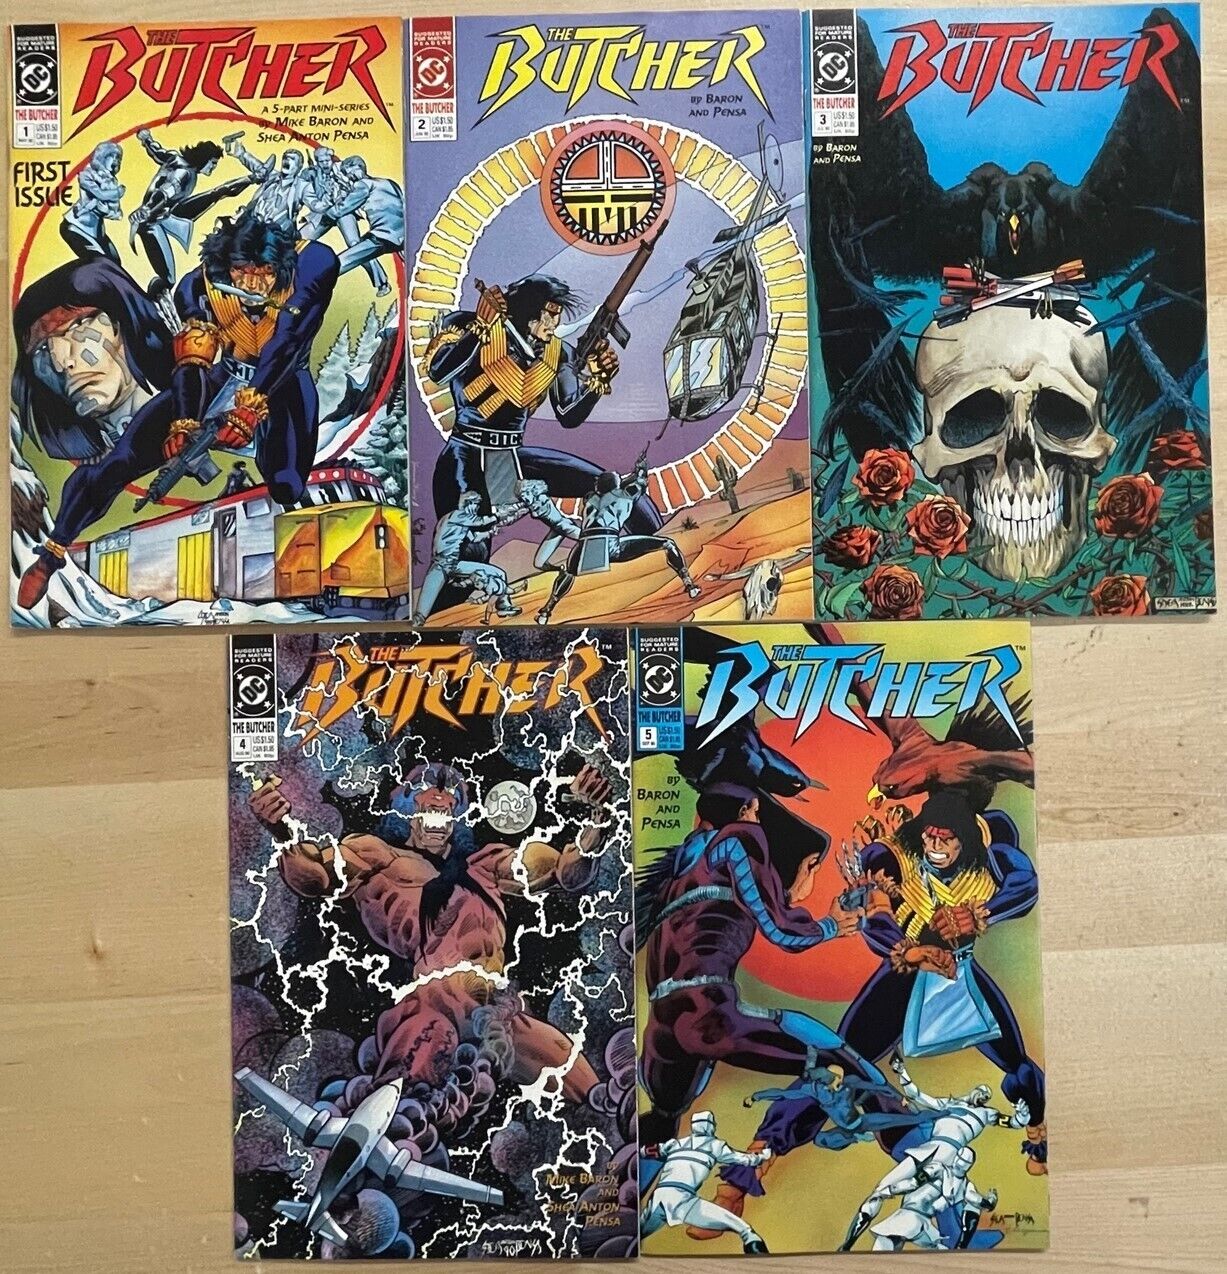 THE BUTCHER #1-5 DC Comics (1990)